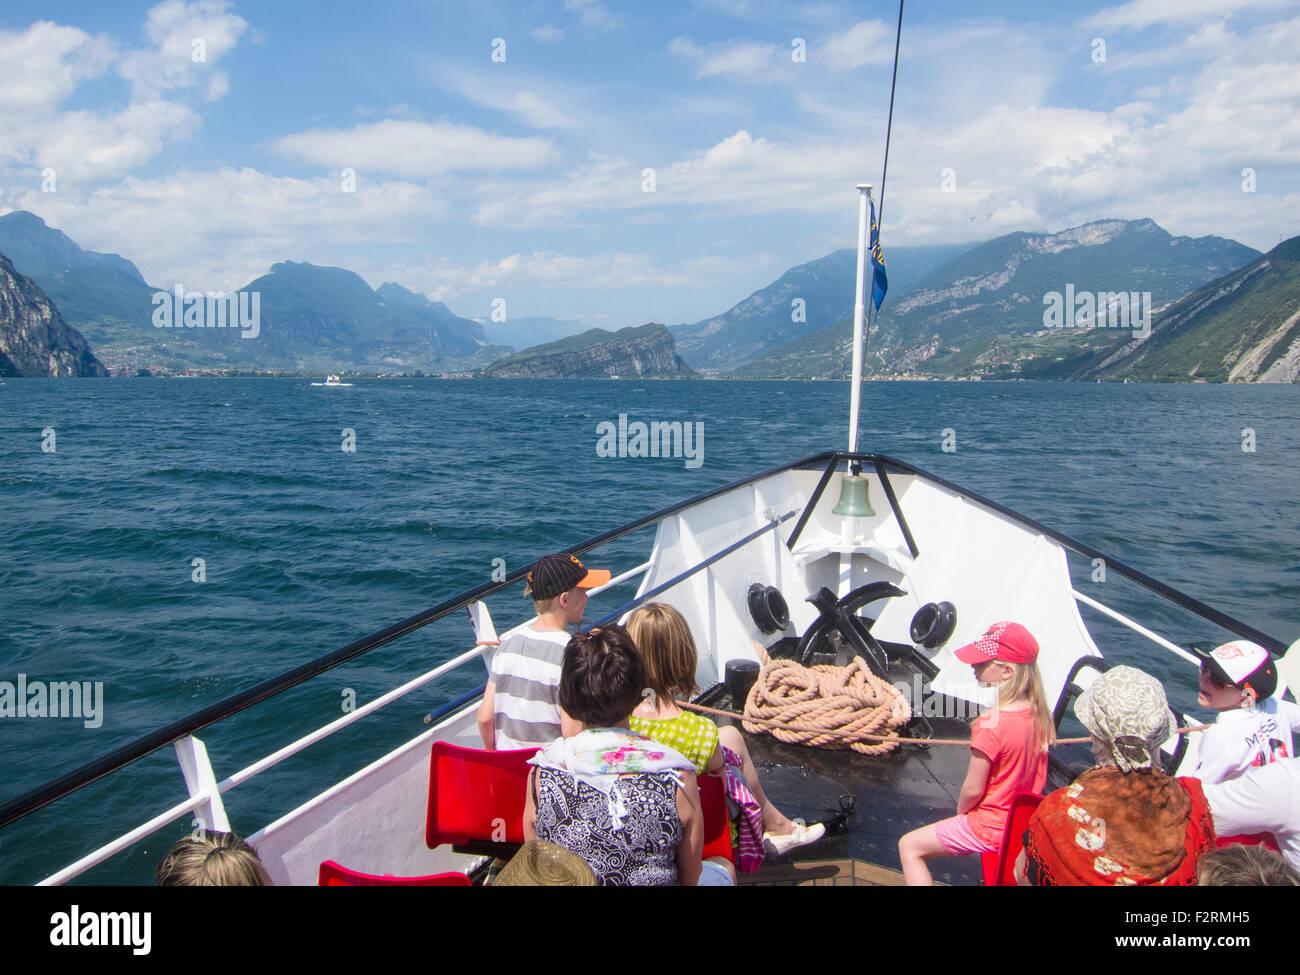 On a boat going towards Torbole and Riva del Garda, Lake Garda, Italy Stock Photo